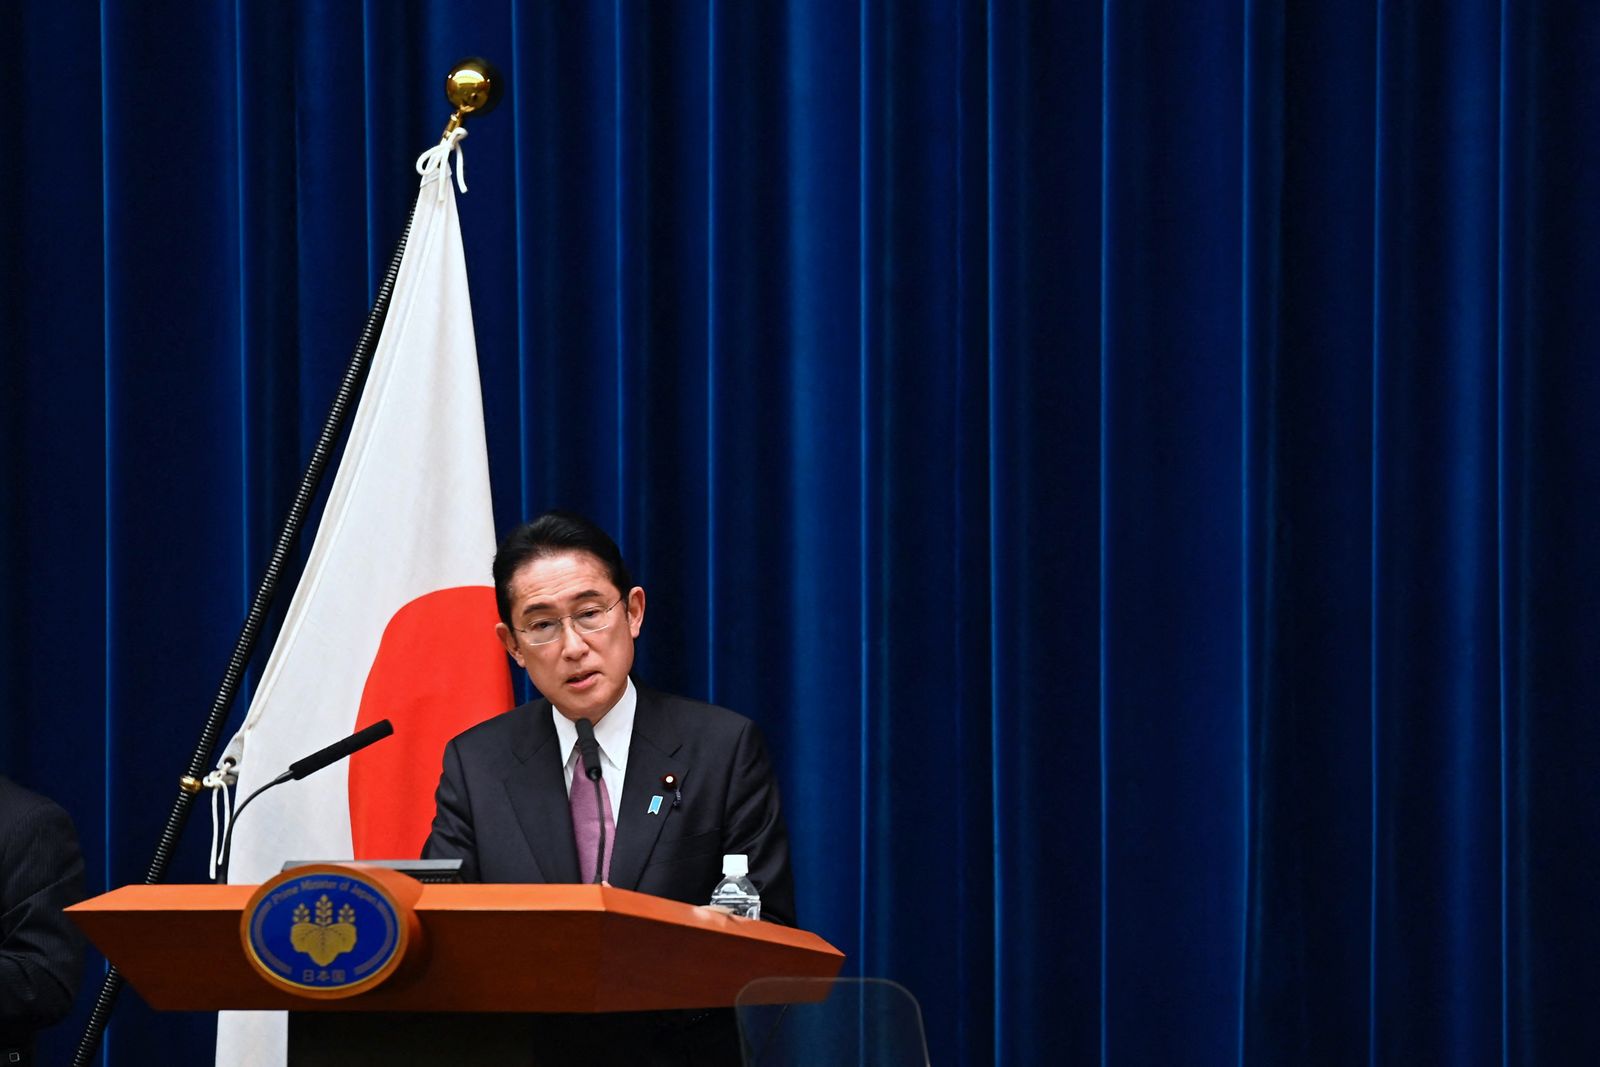 رئيس الوزراء الياباني فوميو كيشيدا خلال مؤتمر صحفي عن استراتيجية الأمن القومي الجديدة لبلاده، طوكيو 16 ديسمبر 2022 - REUTERS